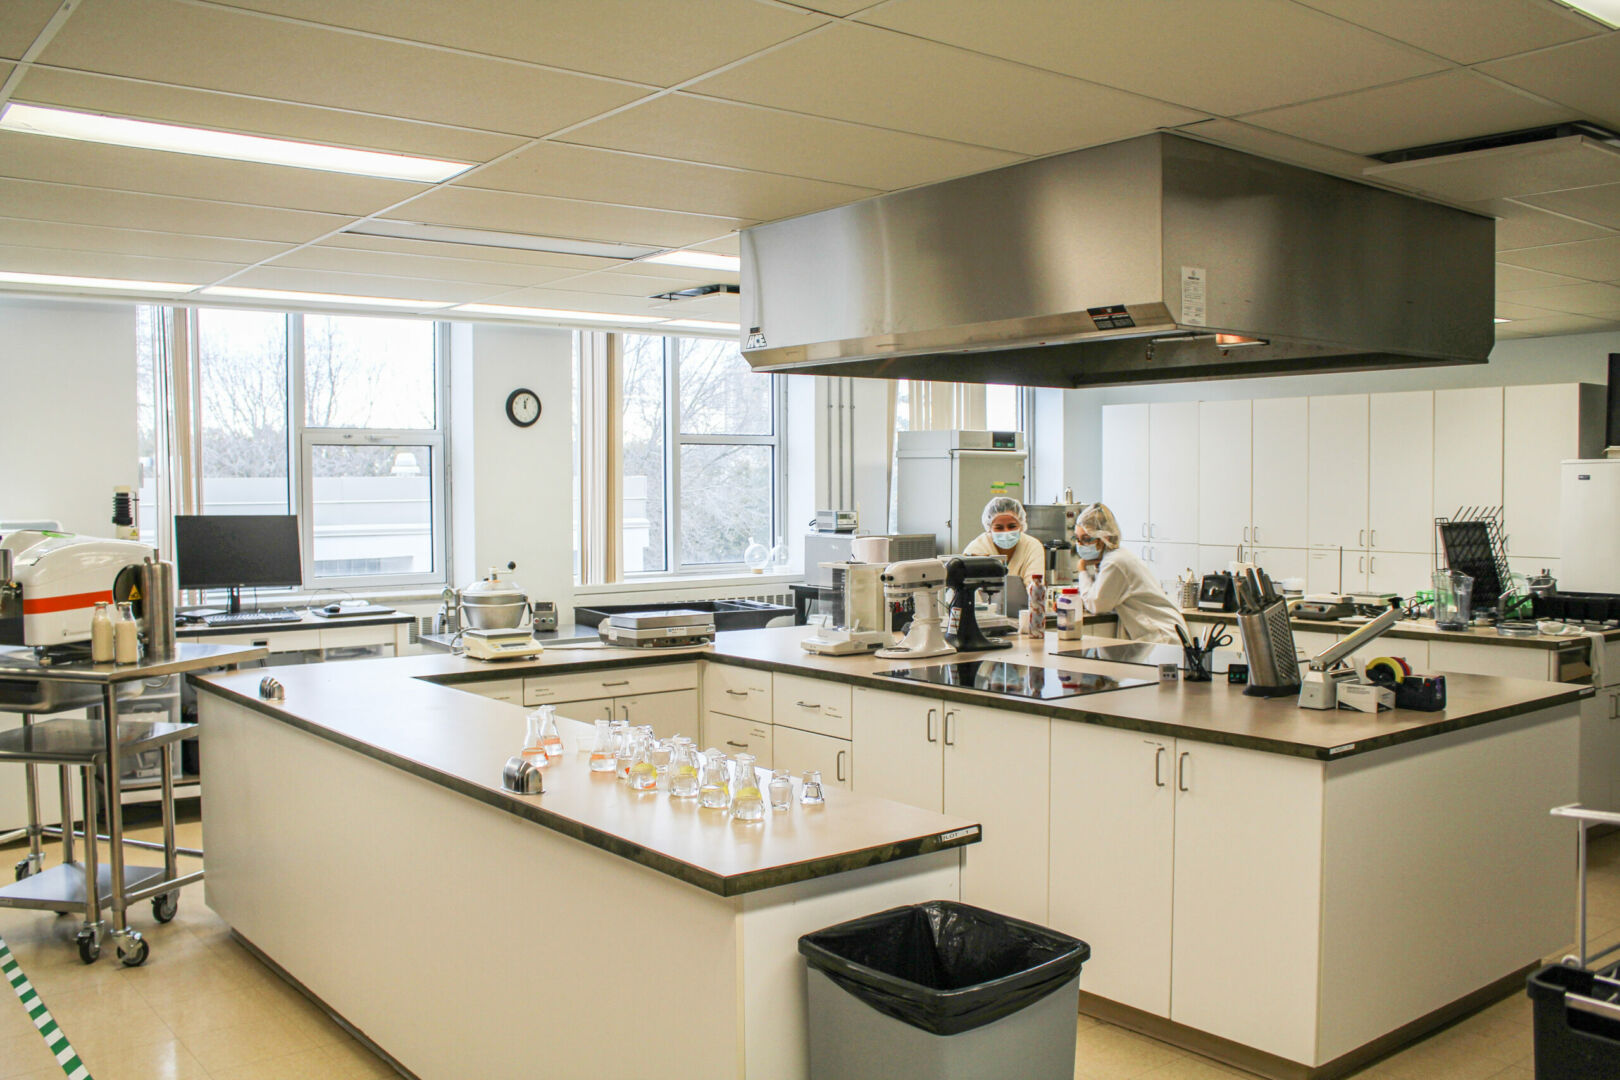 Les laboratoires de Cintech agroalimentaire serviront d’espaces de travail et d’apprentissages pour les entreprises admises au programme de formation. Photo gracieuseté